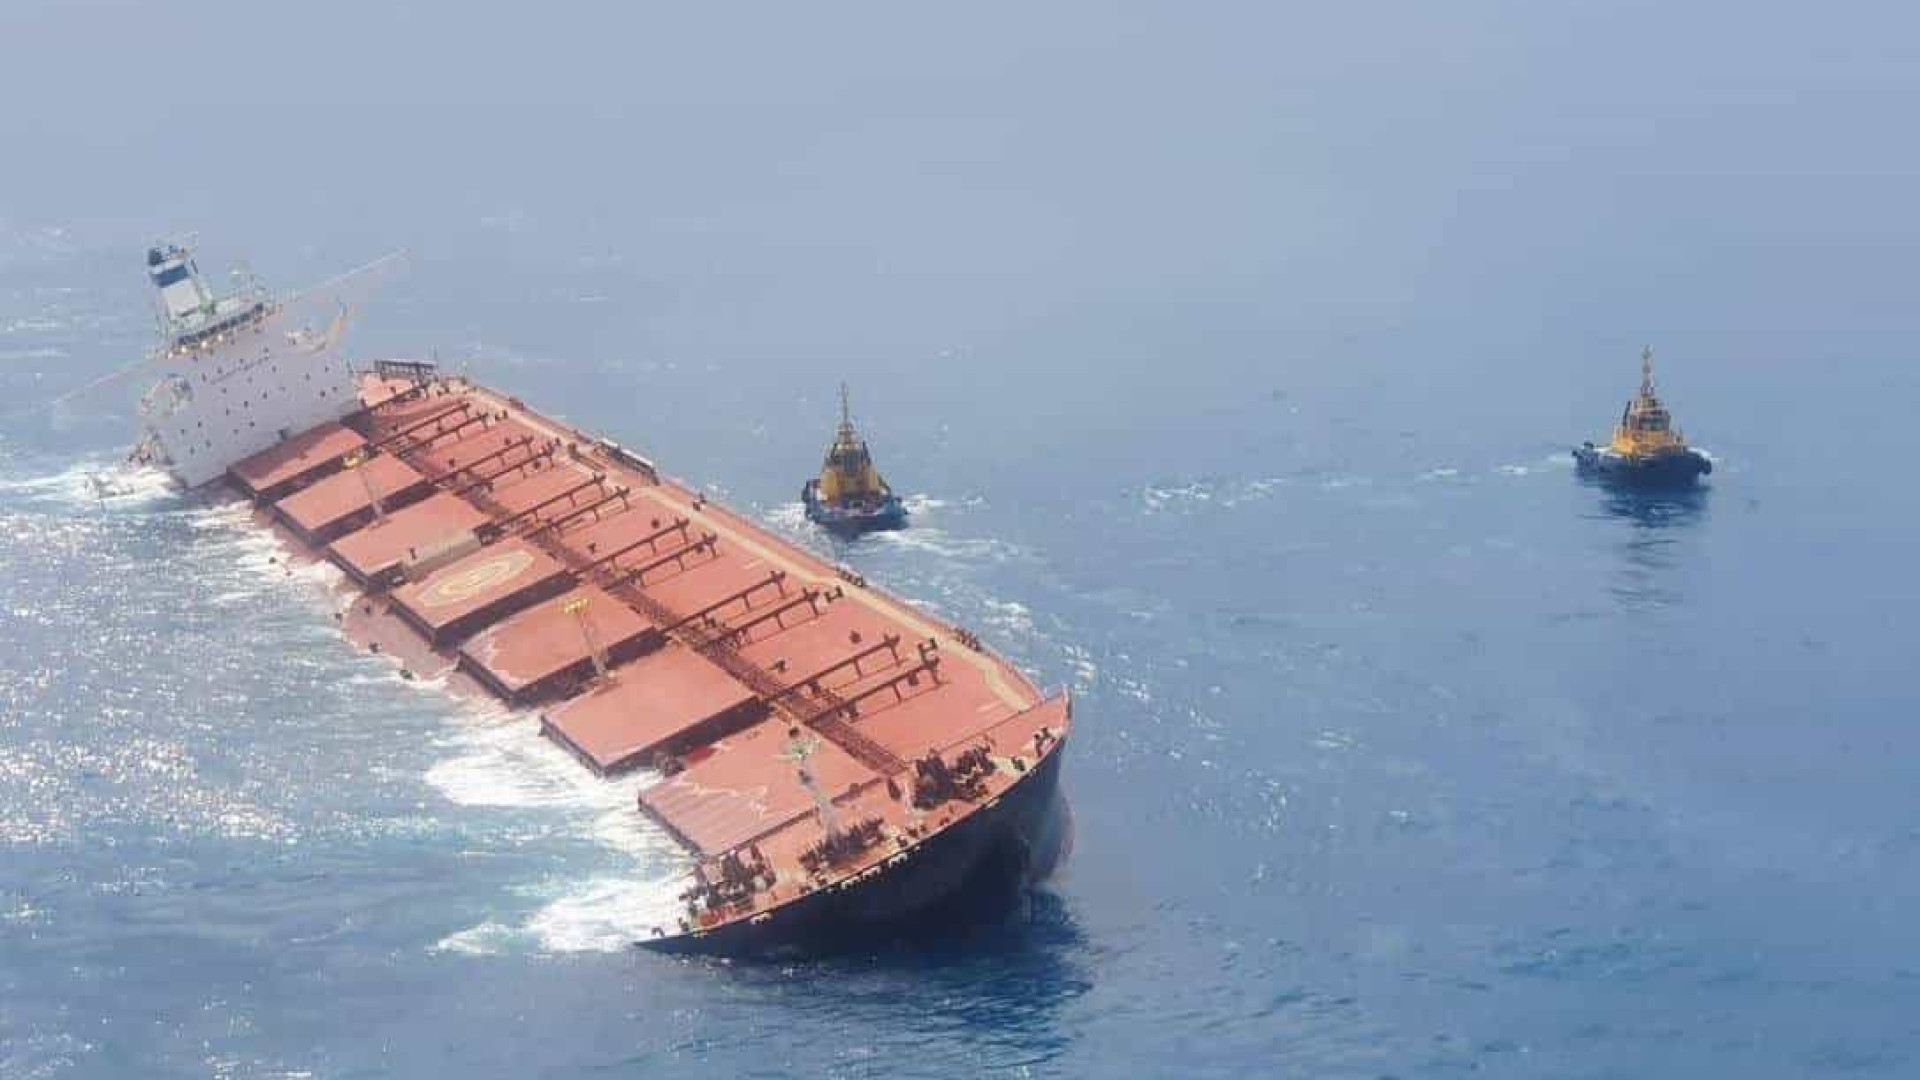 Marinha afunda navio encalhado na costa do Maranhão